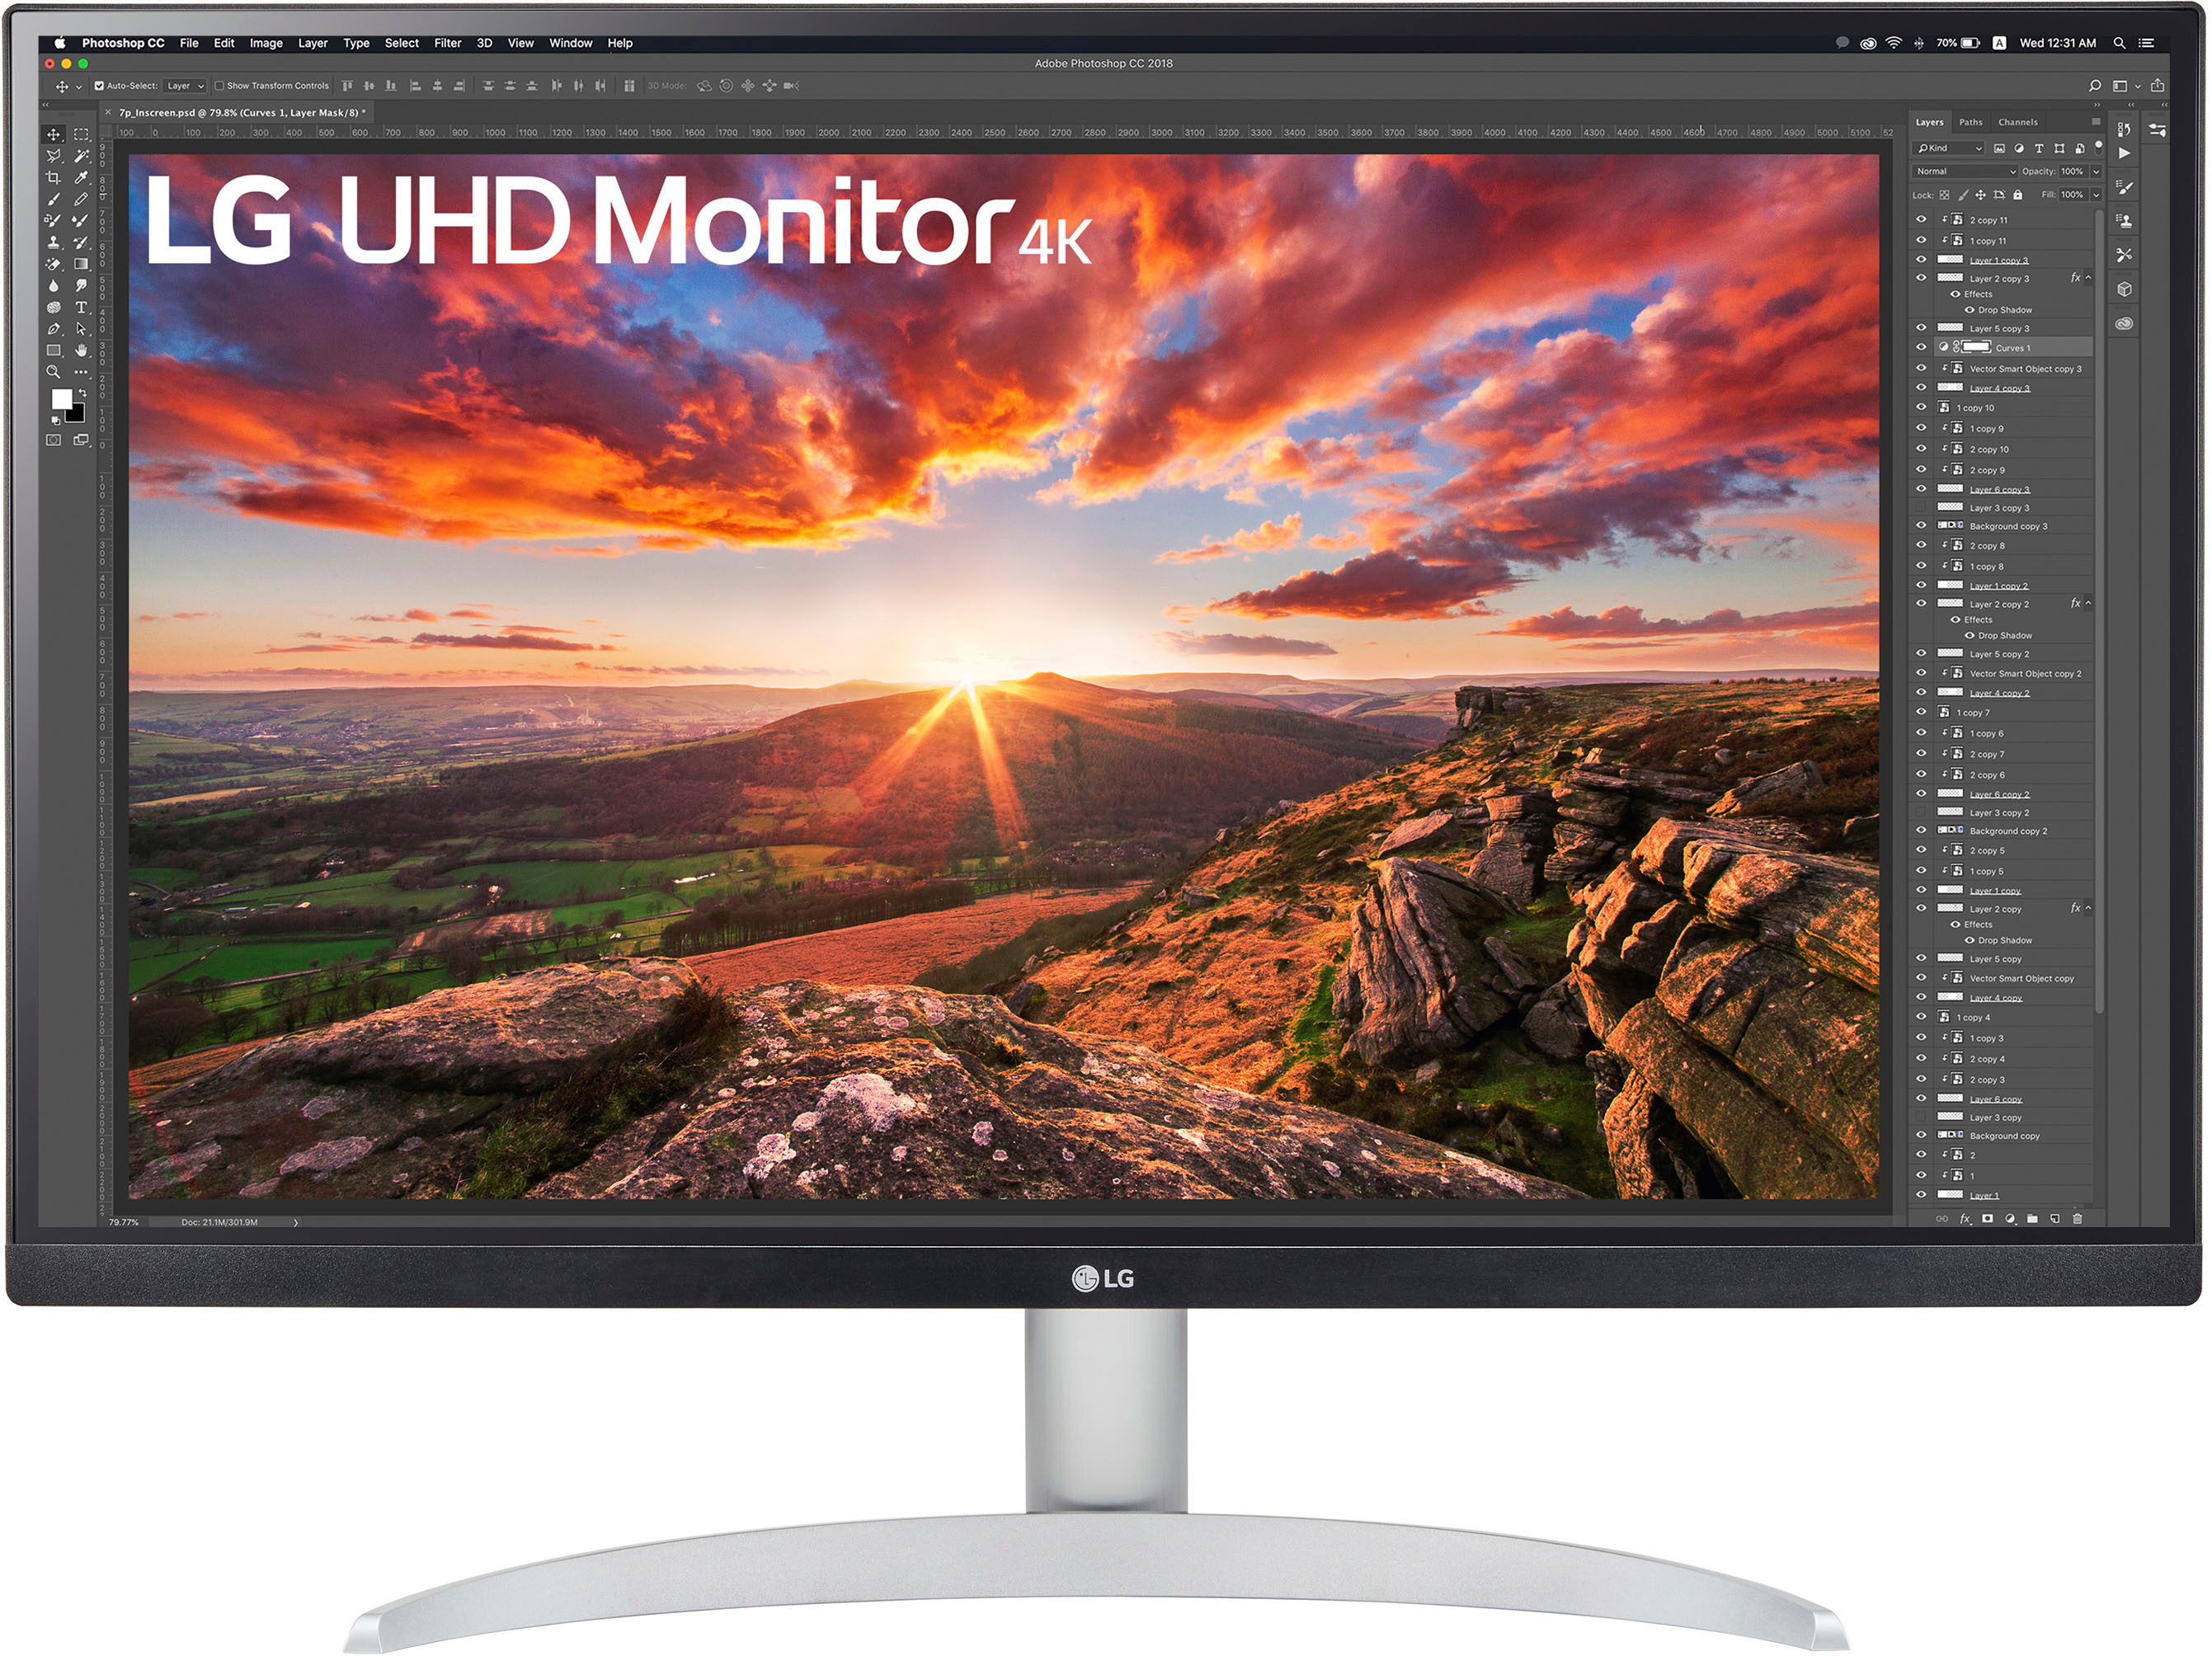 LG 27” IPS LED 4K UHD 60Hz AMD FreeSync Monitor with HDR